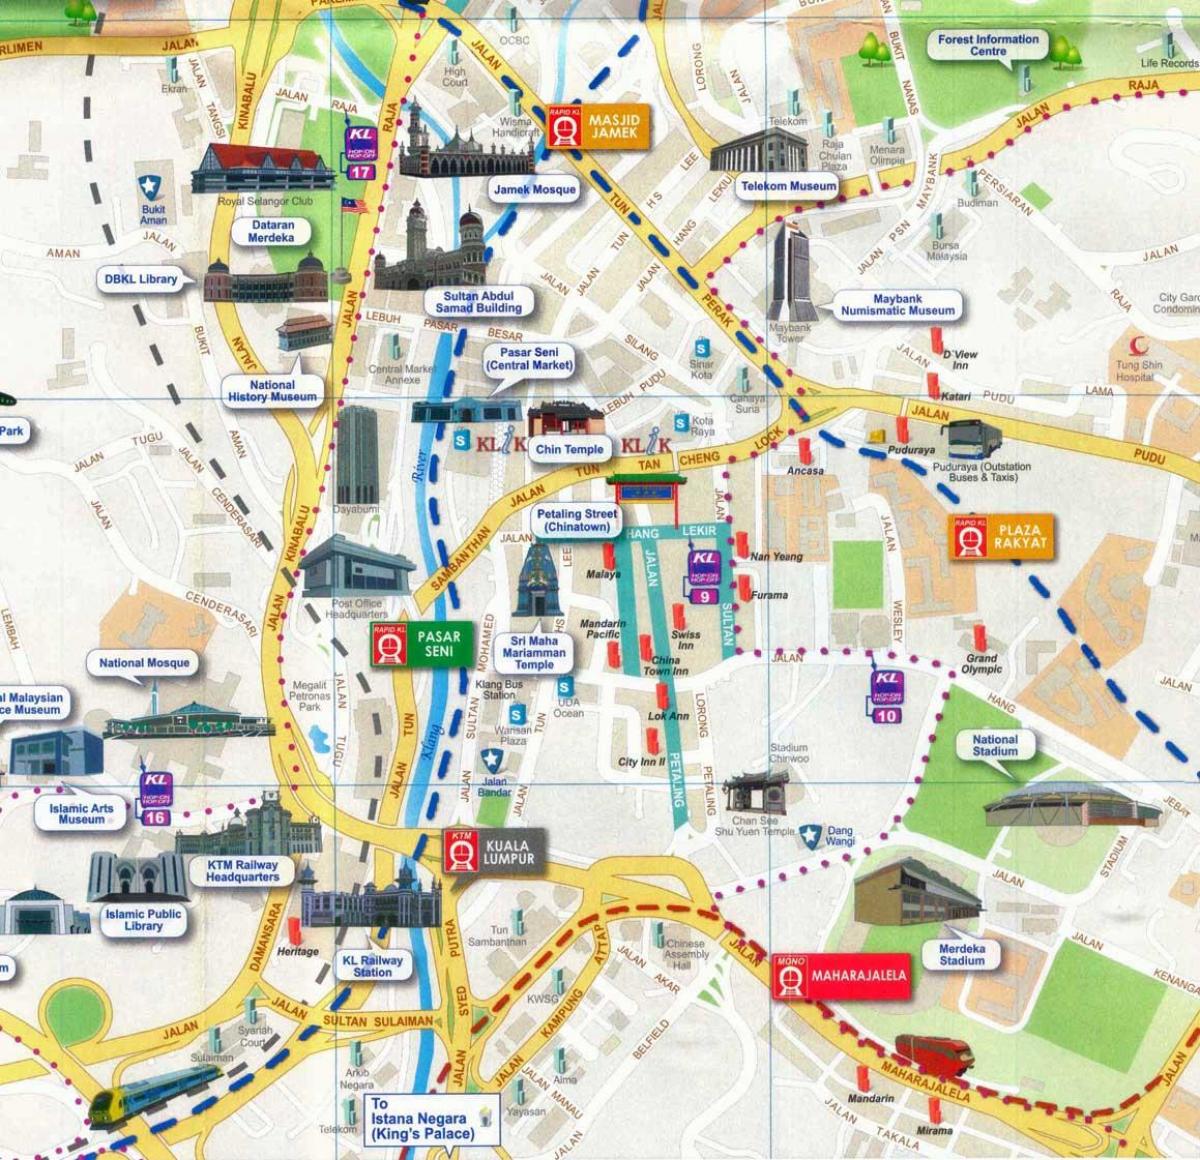 Картата на улица Petaling в Куала Лумпур